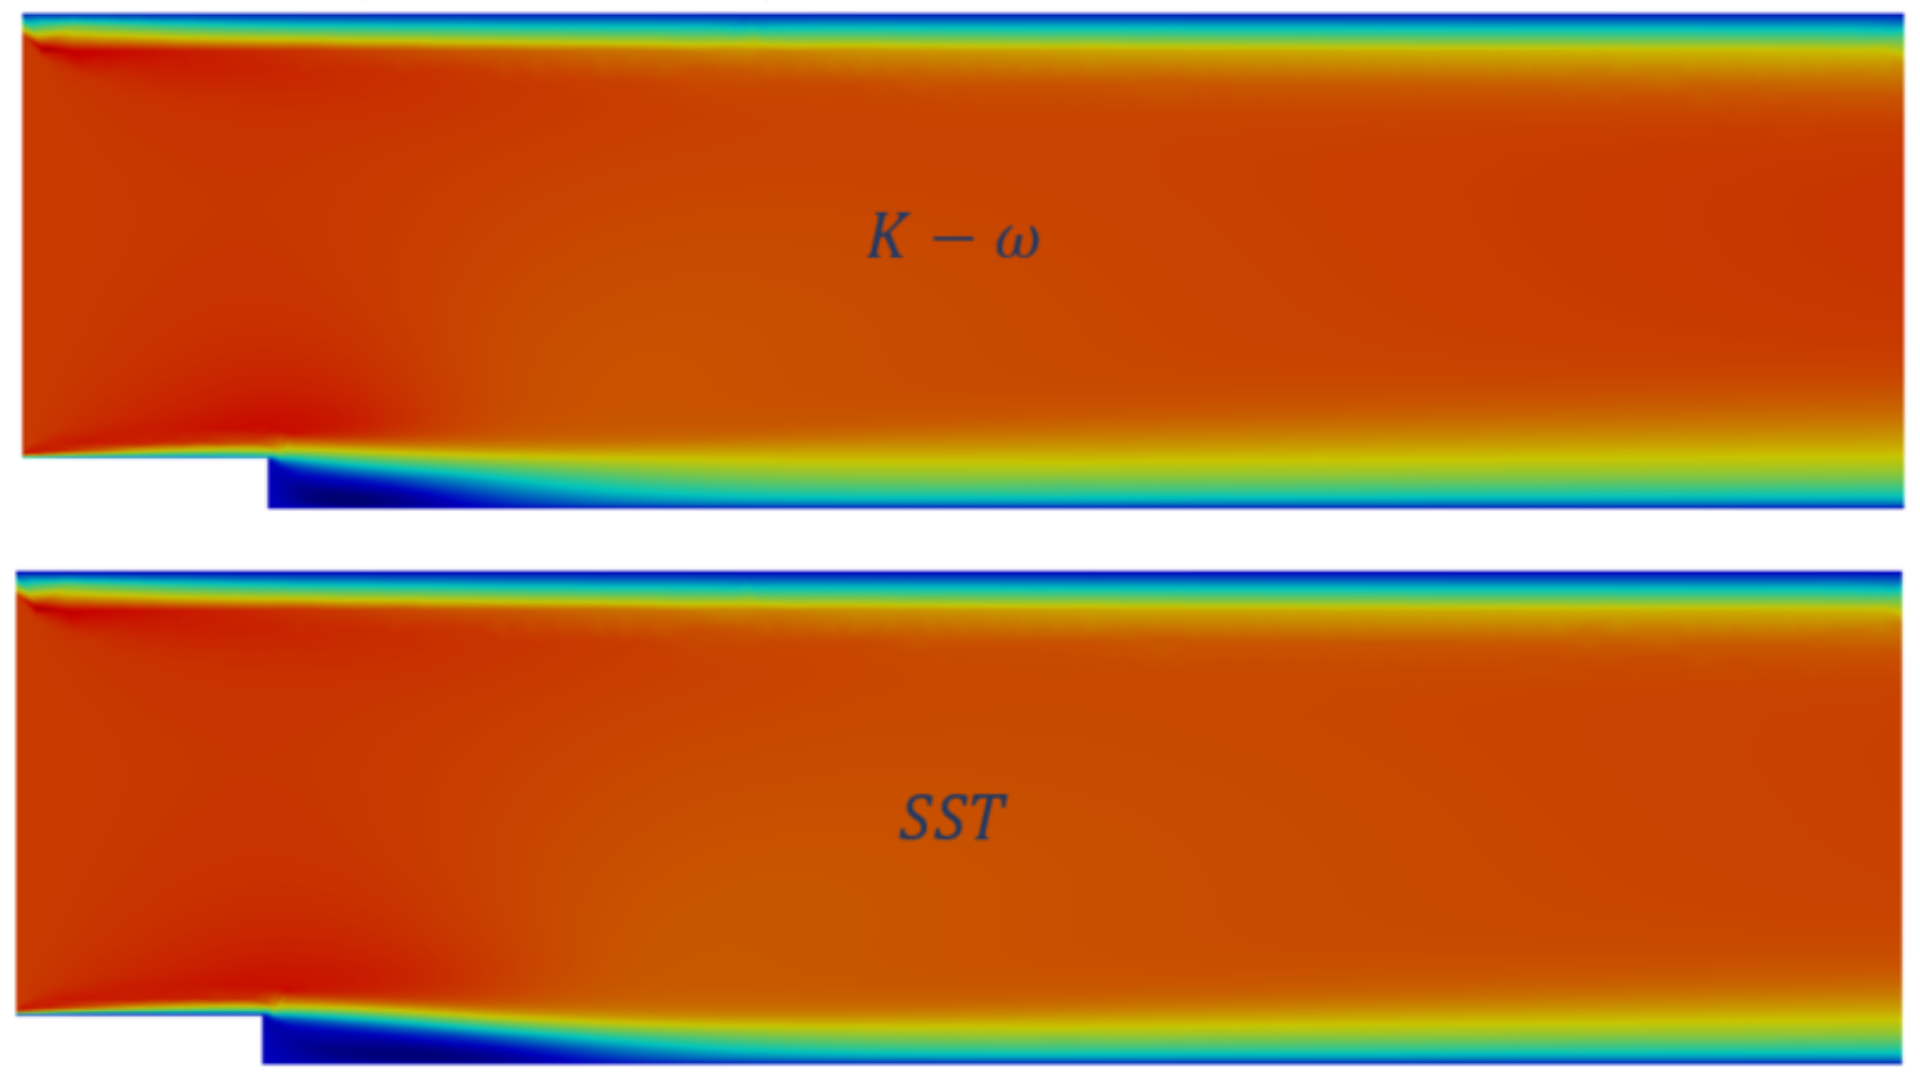 Flujo invertido tras escalón - Comparativa de diferentes modelos de turbulencia